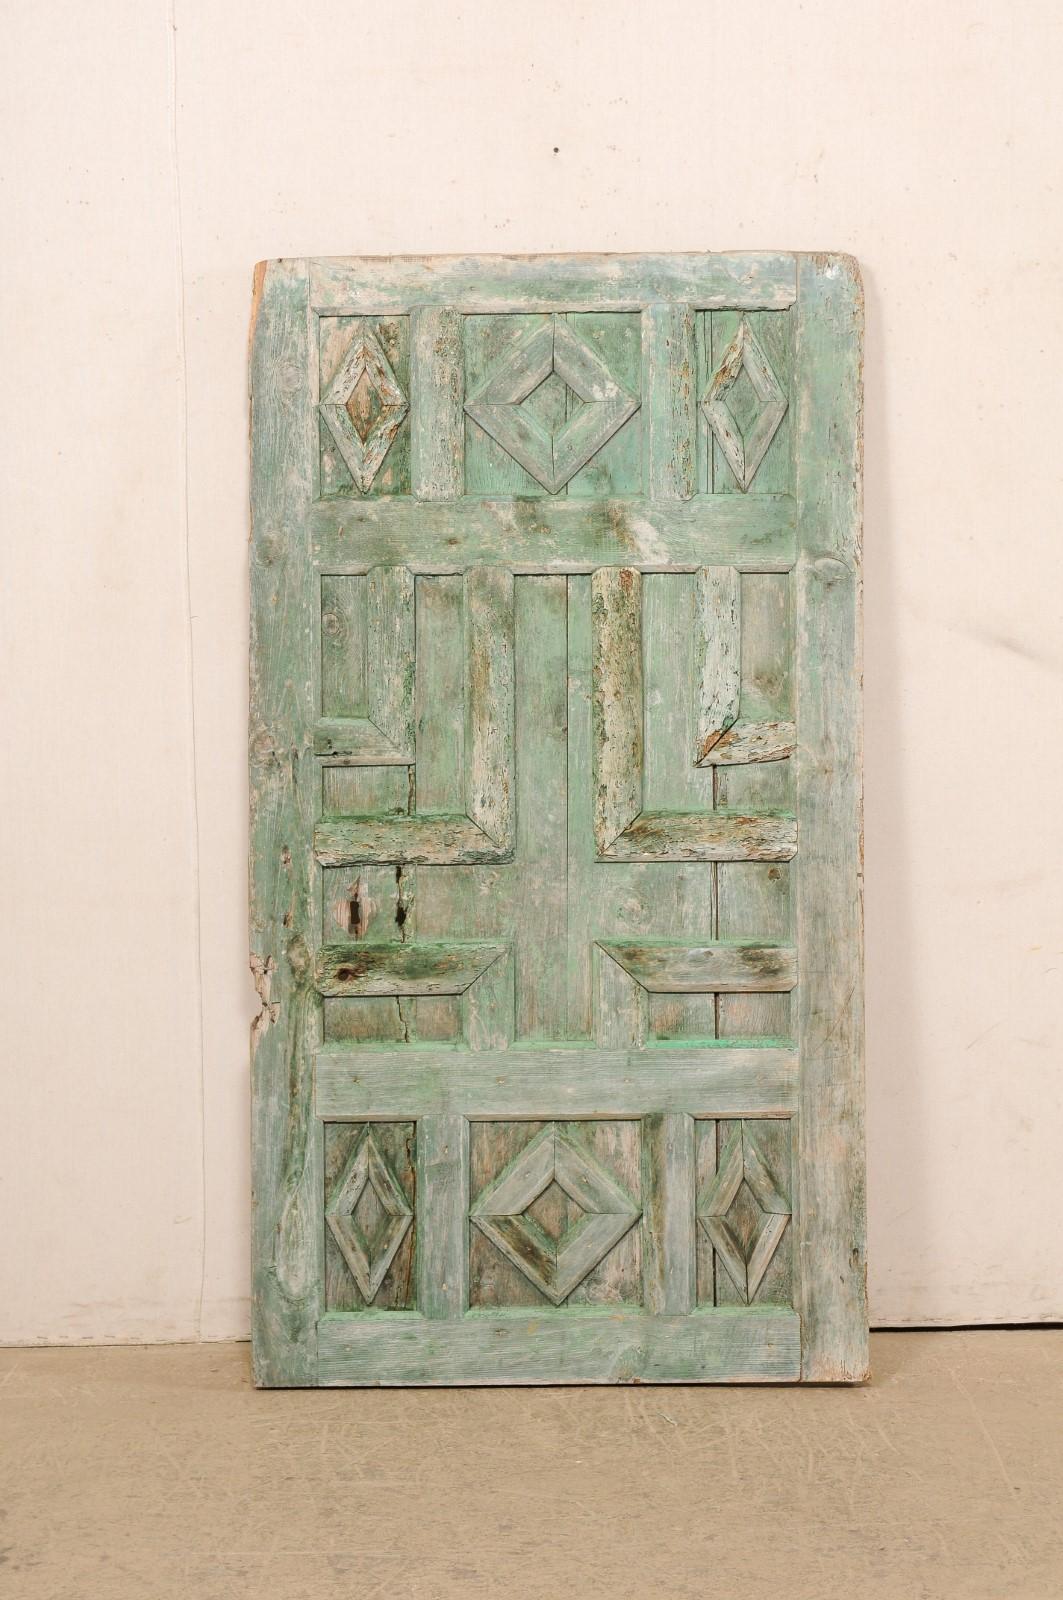 Eine spanische bemalte, dekorativ getäfelte Holztür aus dem 19. Jahrhundert. Diese antike Tür aus Spanien wurde mit erhabenen Paneelen in verschiedenen geometrischen Mustern gestaltet, wodurch ein einzigartiges und ansprechendes Muster entsteht. Die